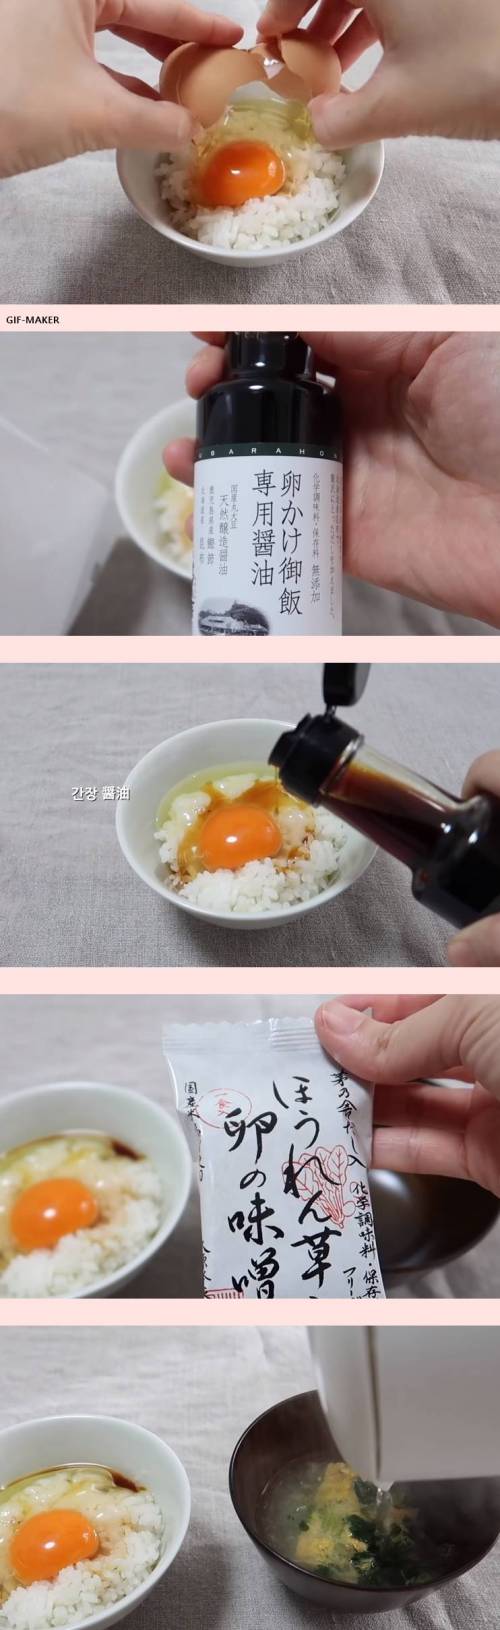 한국 간장계란밥,,일본 간장계란밥....mp4